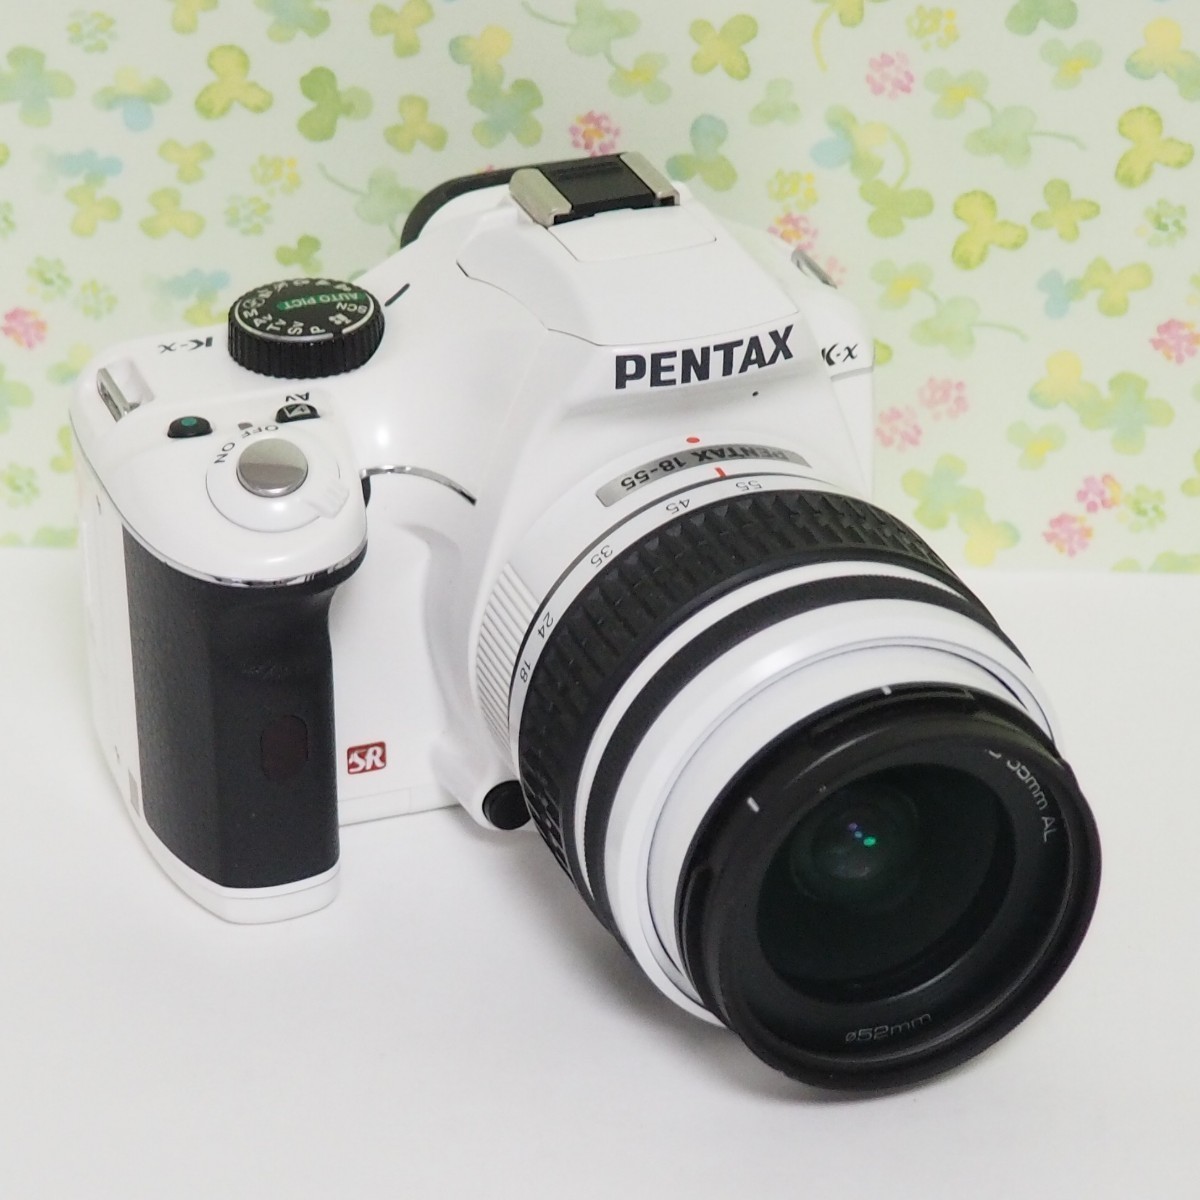 PENTAX k-x ペンタックス 一眼レフカメラ 送料無料